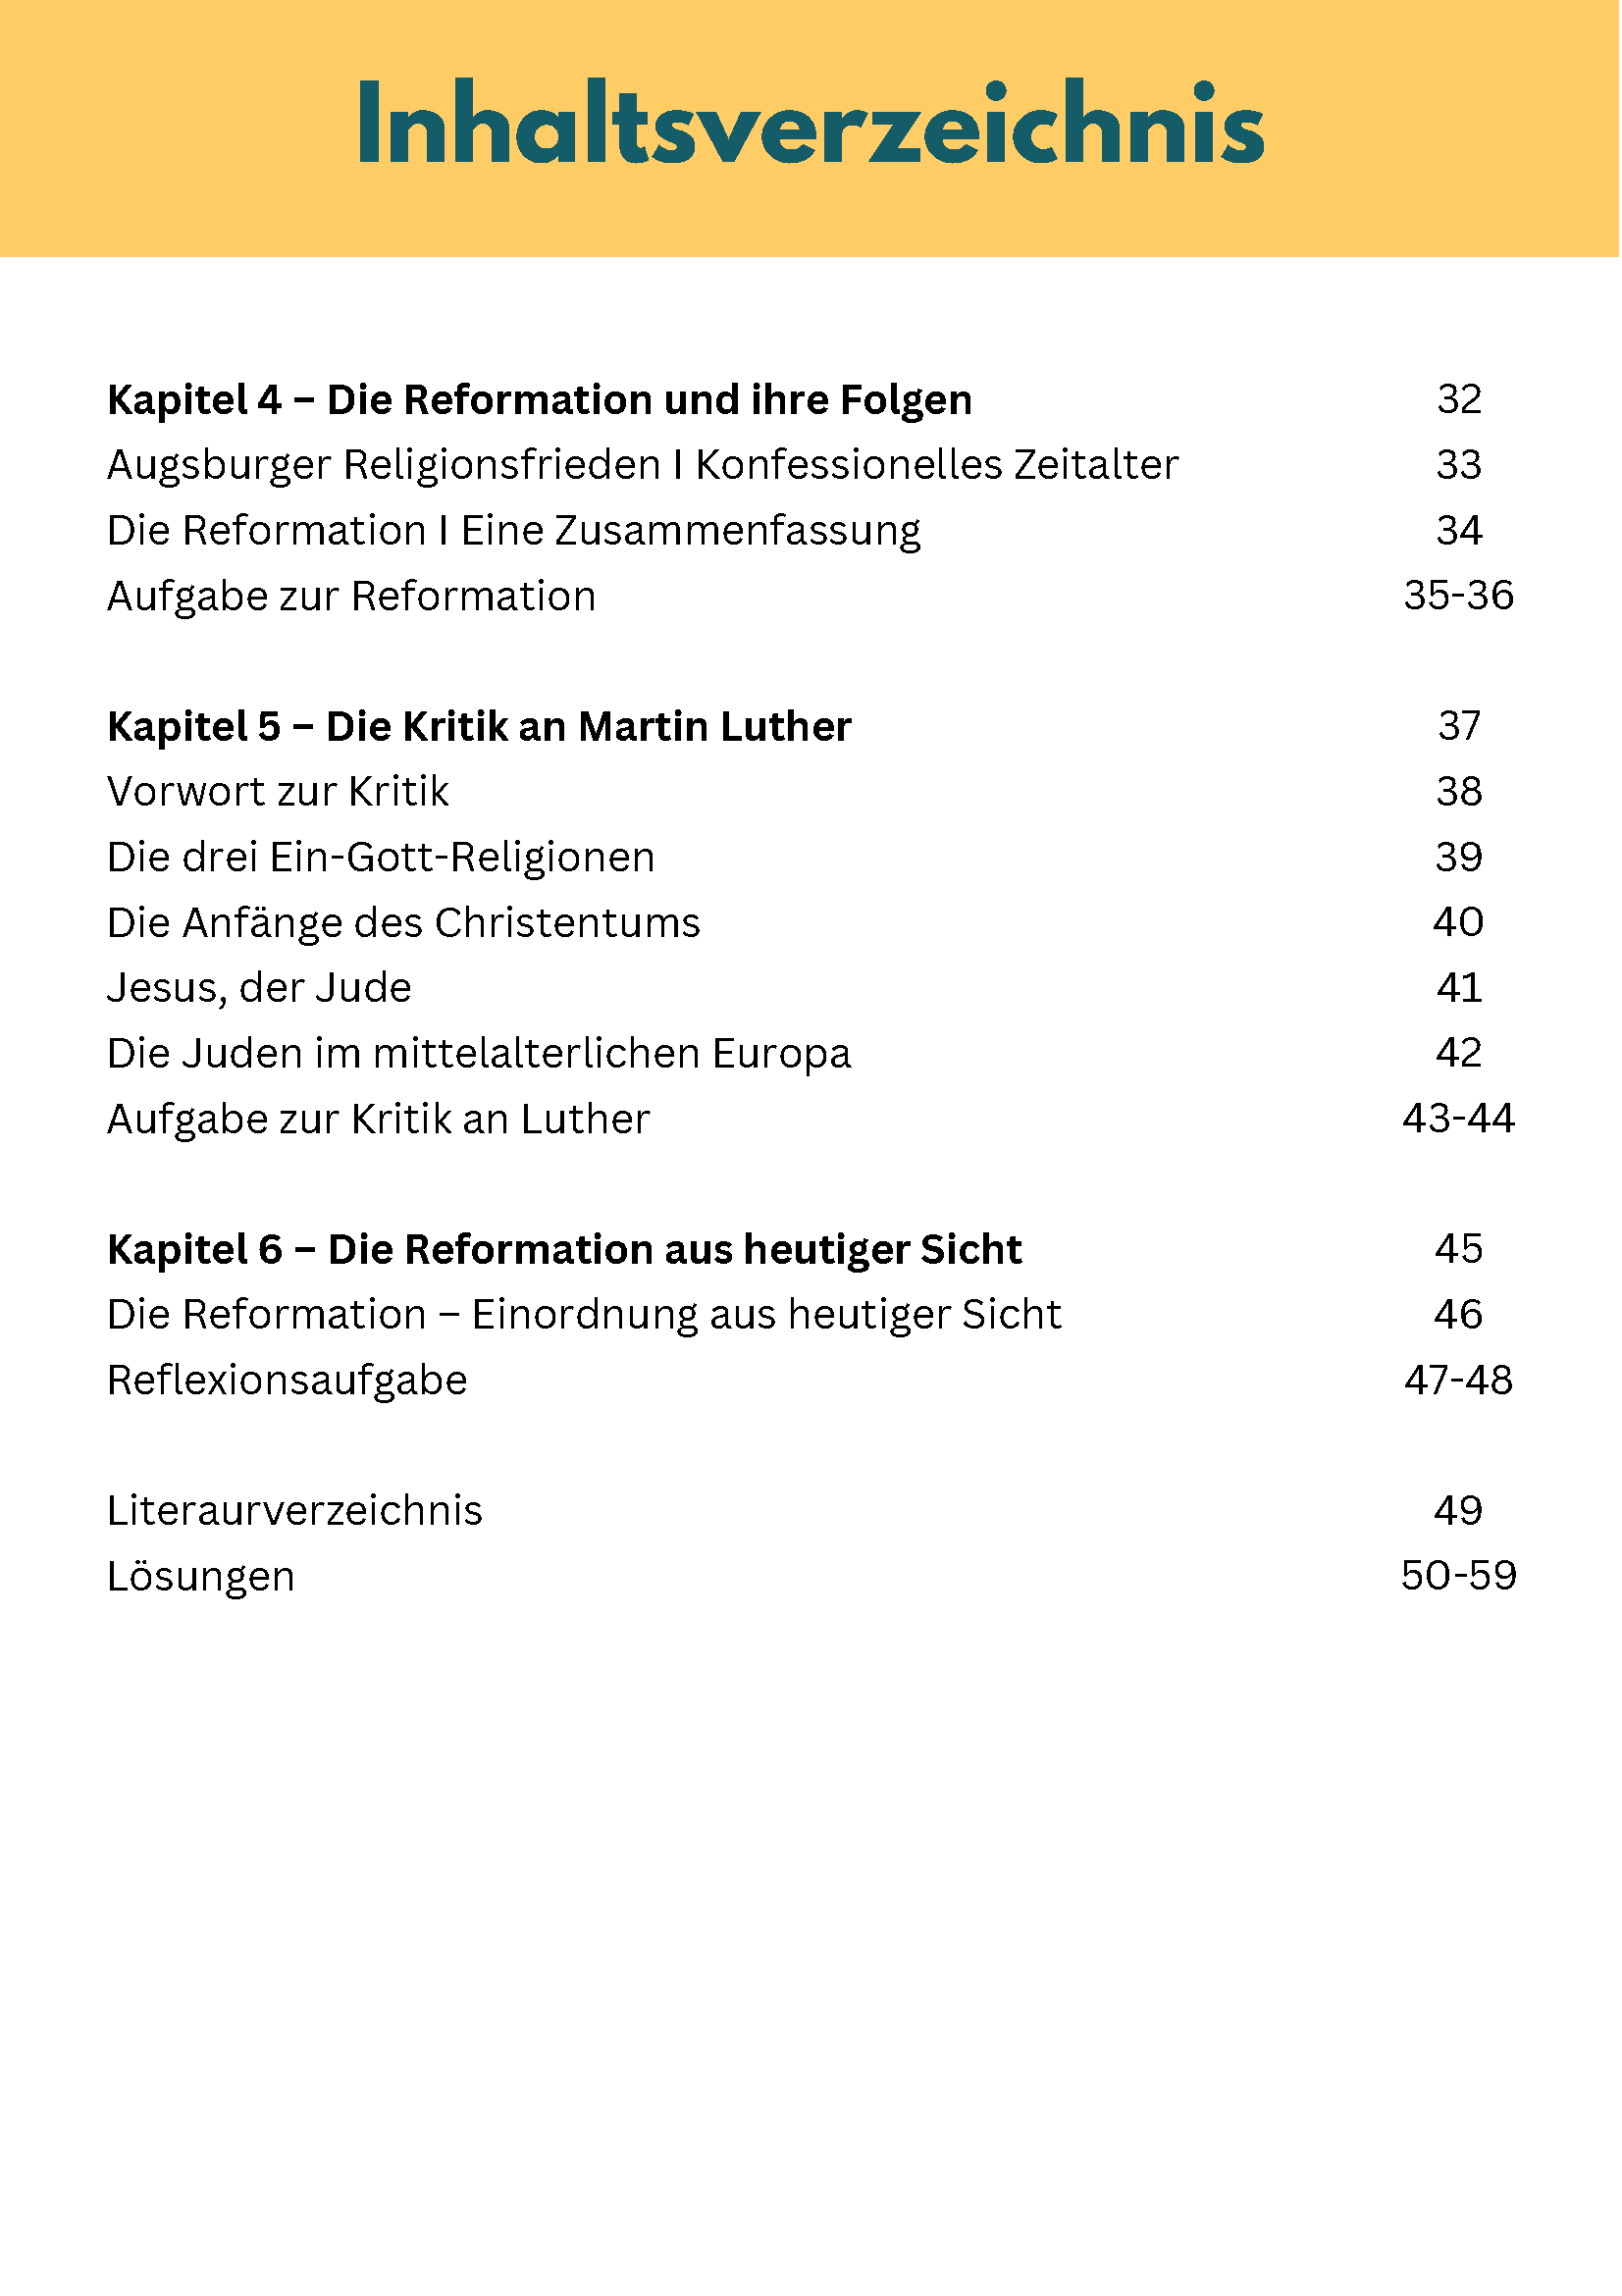 Inhaltsverzeichnis vom Arbeitsheft Reformation